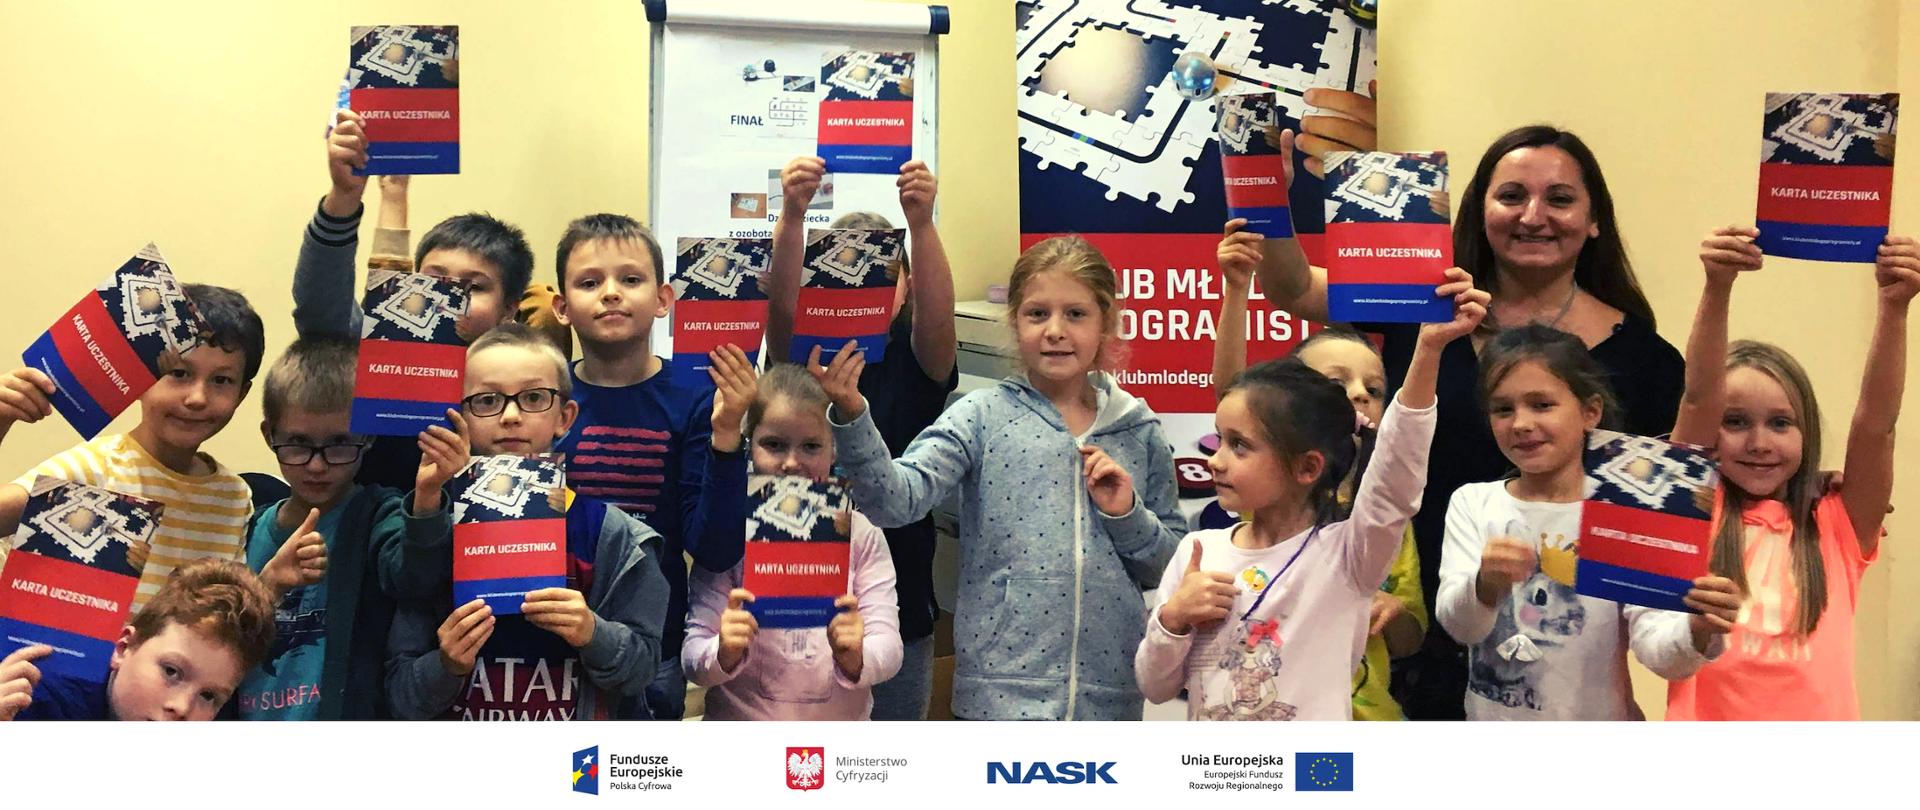 Kilkanaścioro dzieci trzyma publikację "Kartę uczestnika Klubu Młodego Programisty".